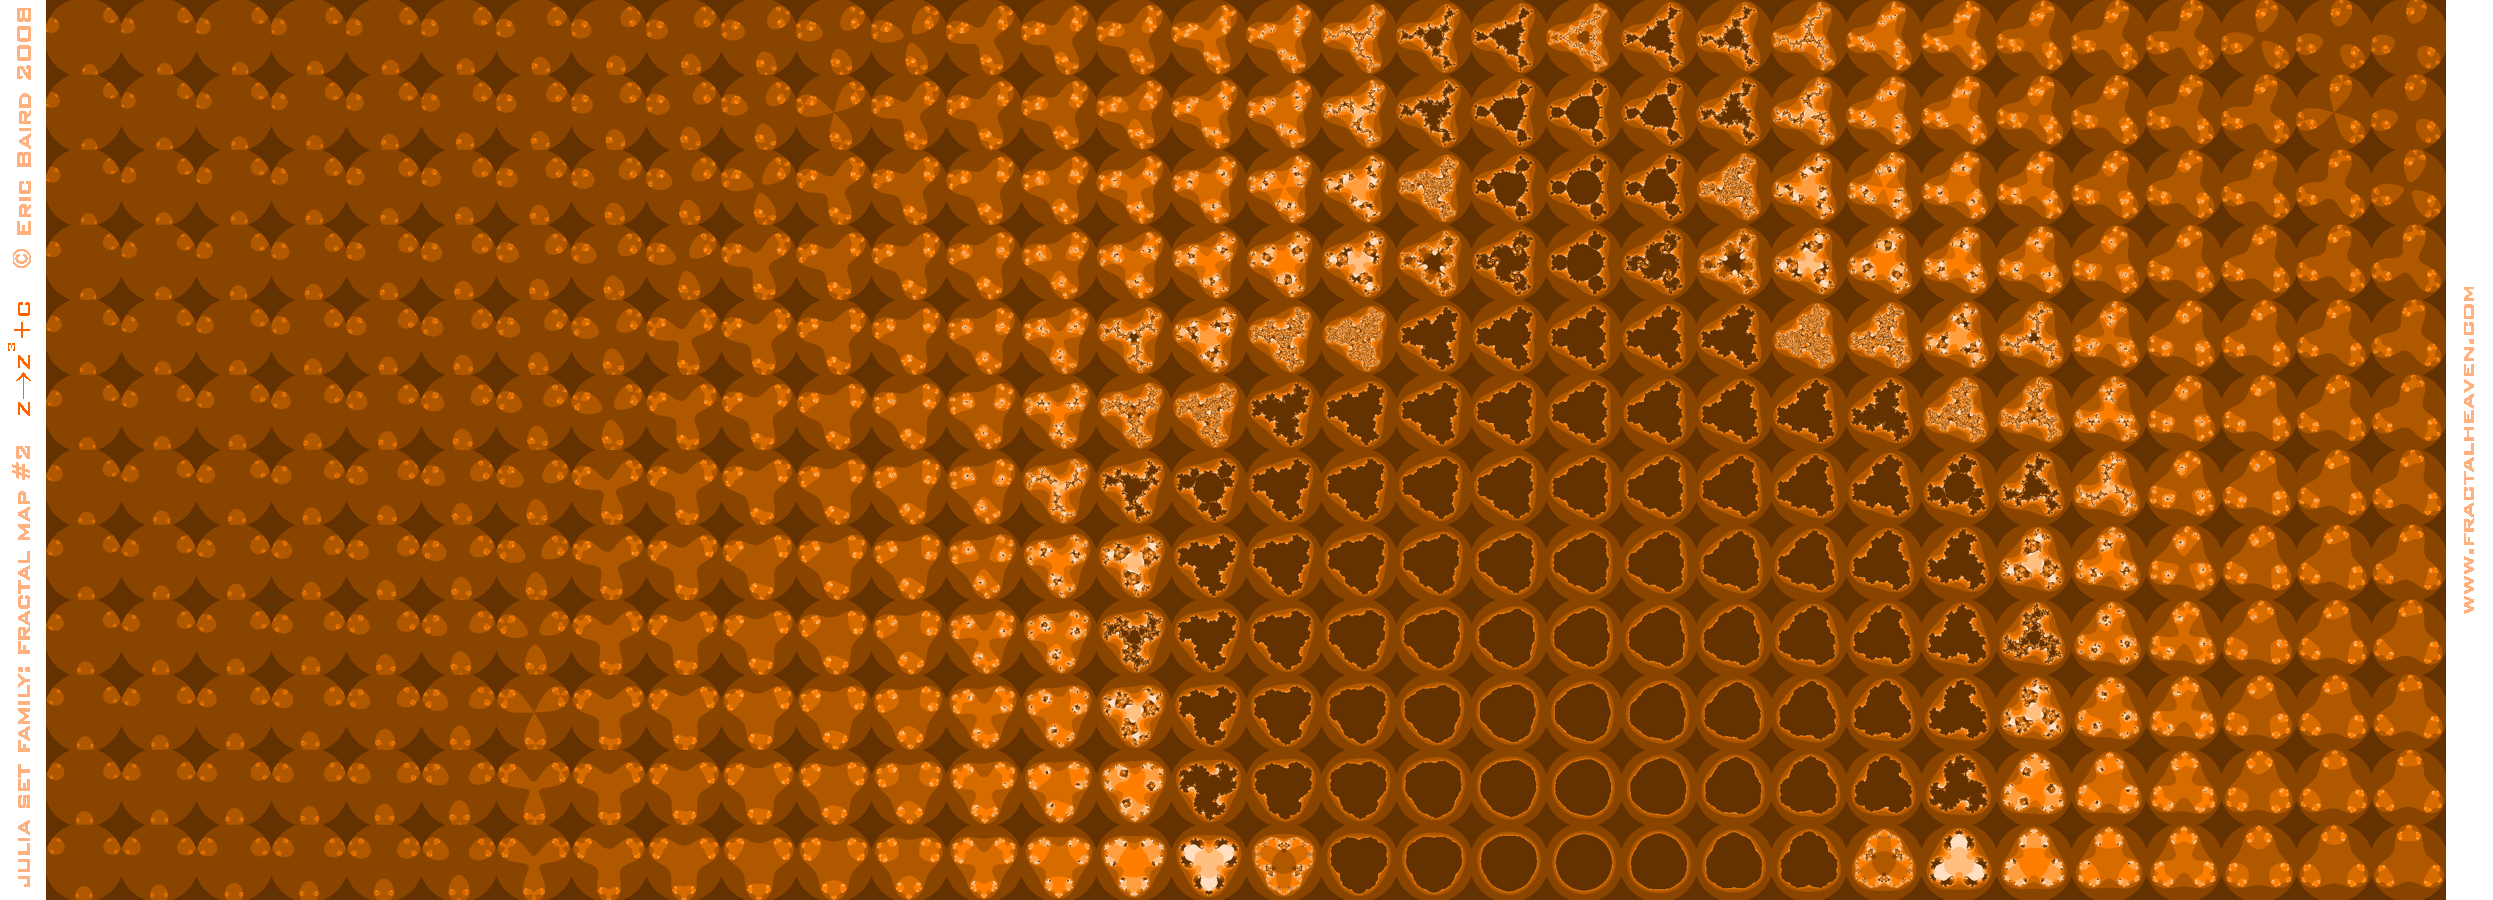 table-array of Julia Set fractal images, for z-cubed, in orange